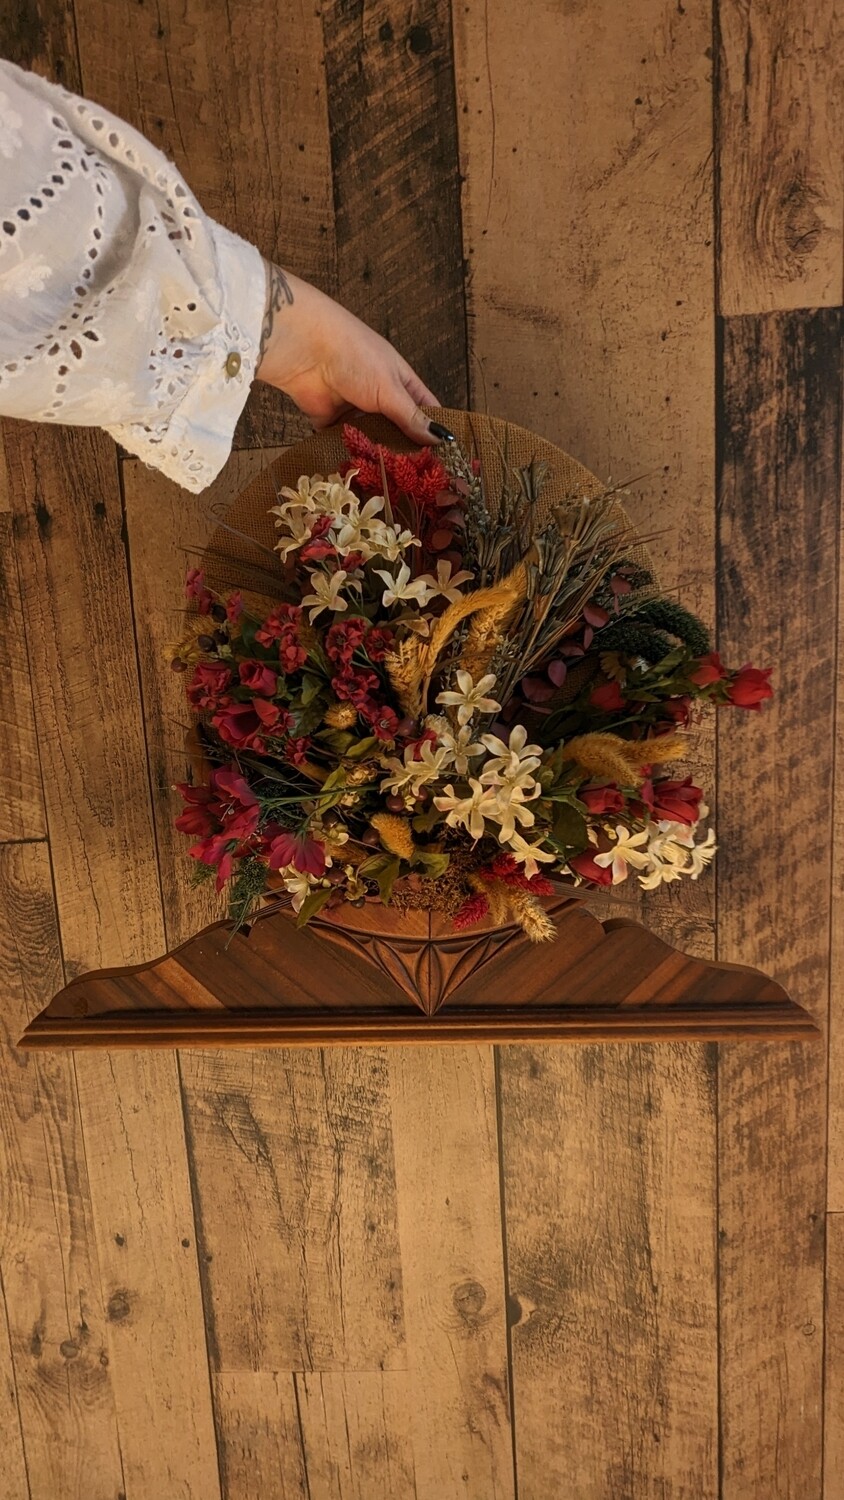 Floral arrangement on wood base